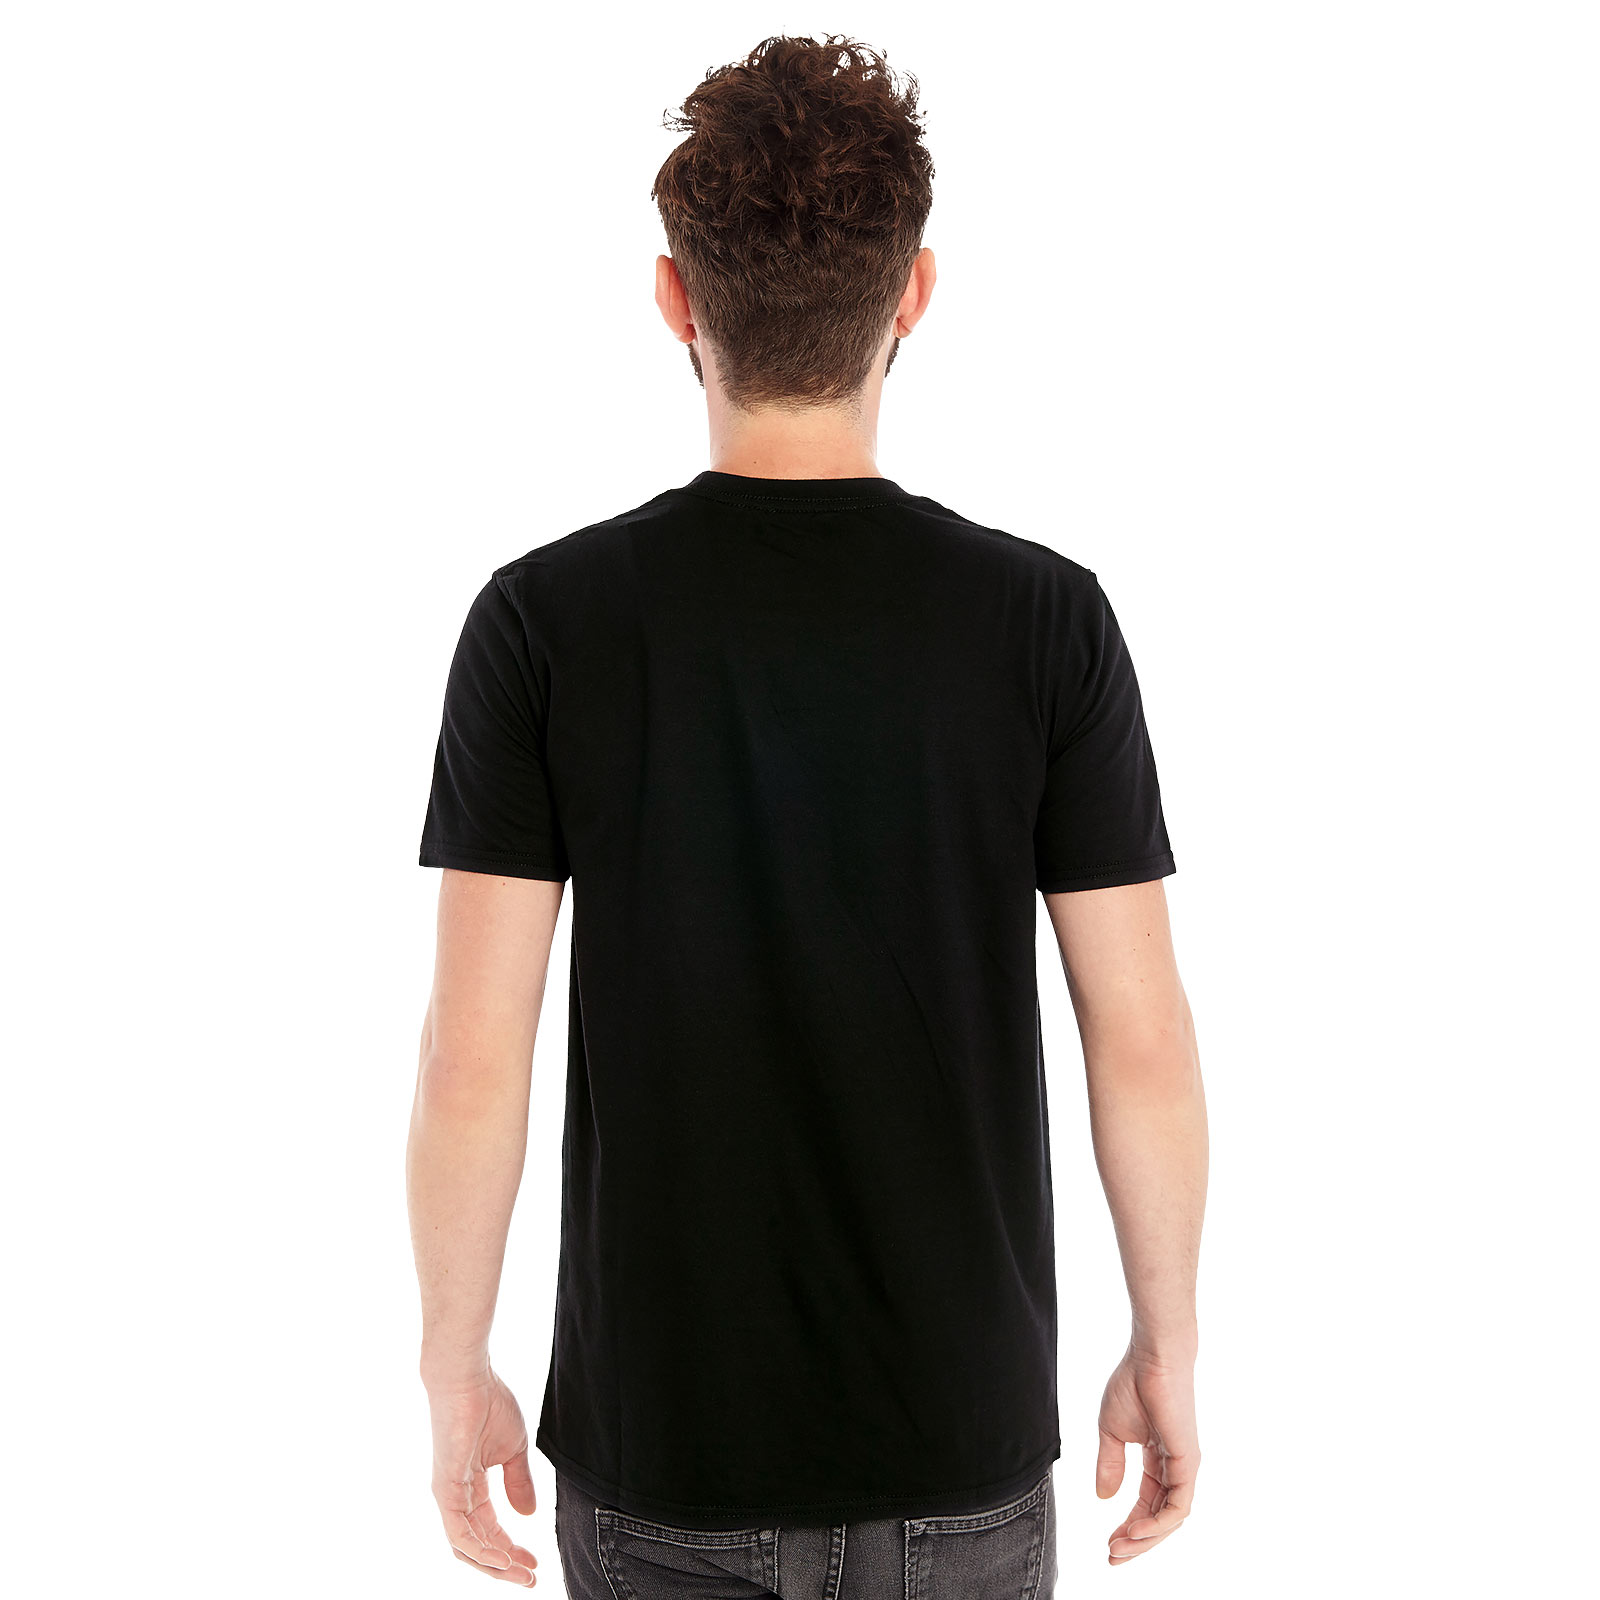 Overwatch - T-shirt logo noir